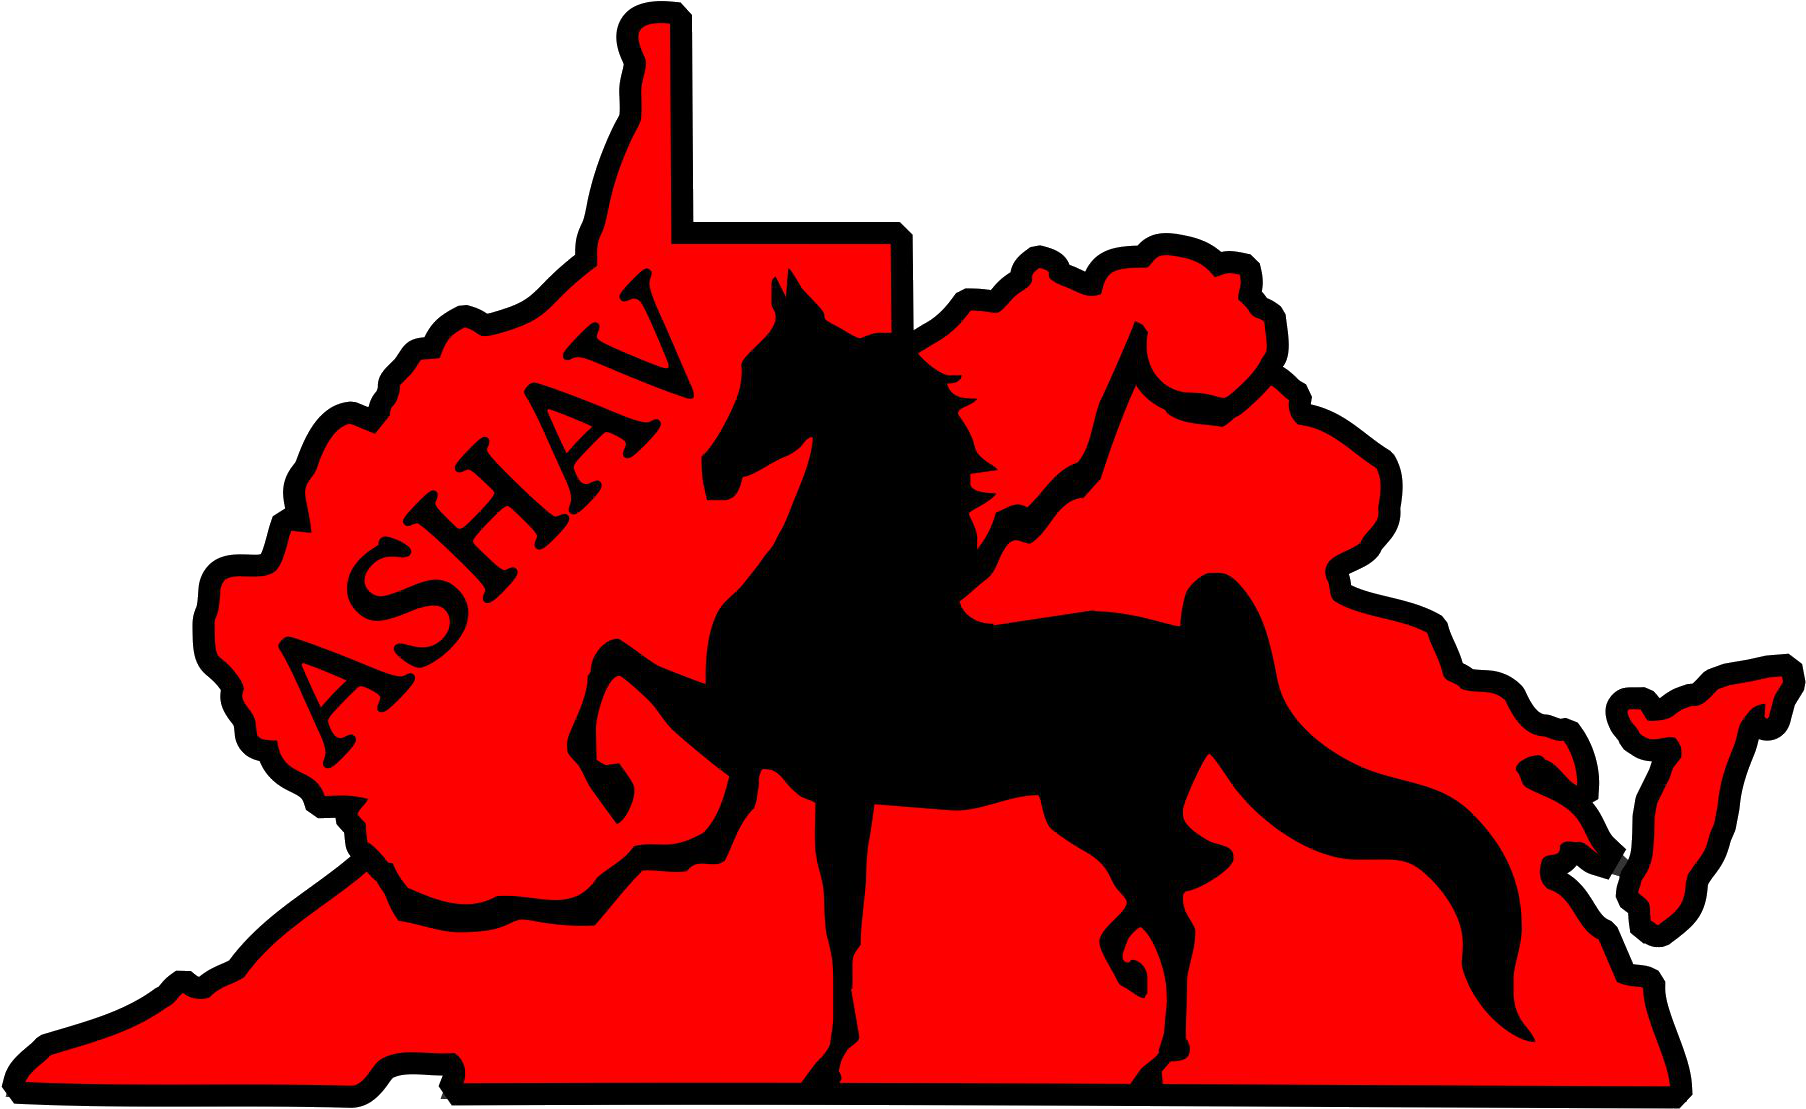 2018 Ashav Horse Show September - 2018 Ashav Horse Show September (1813x1115)